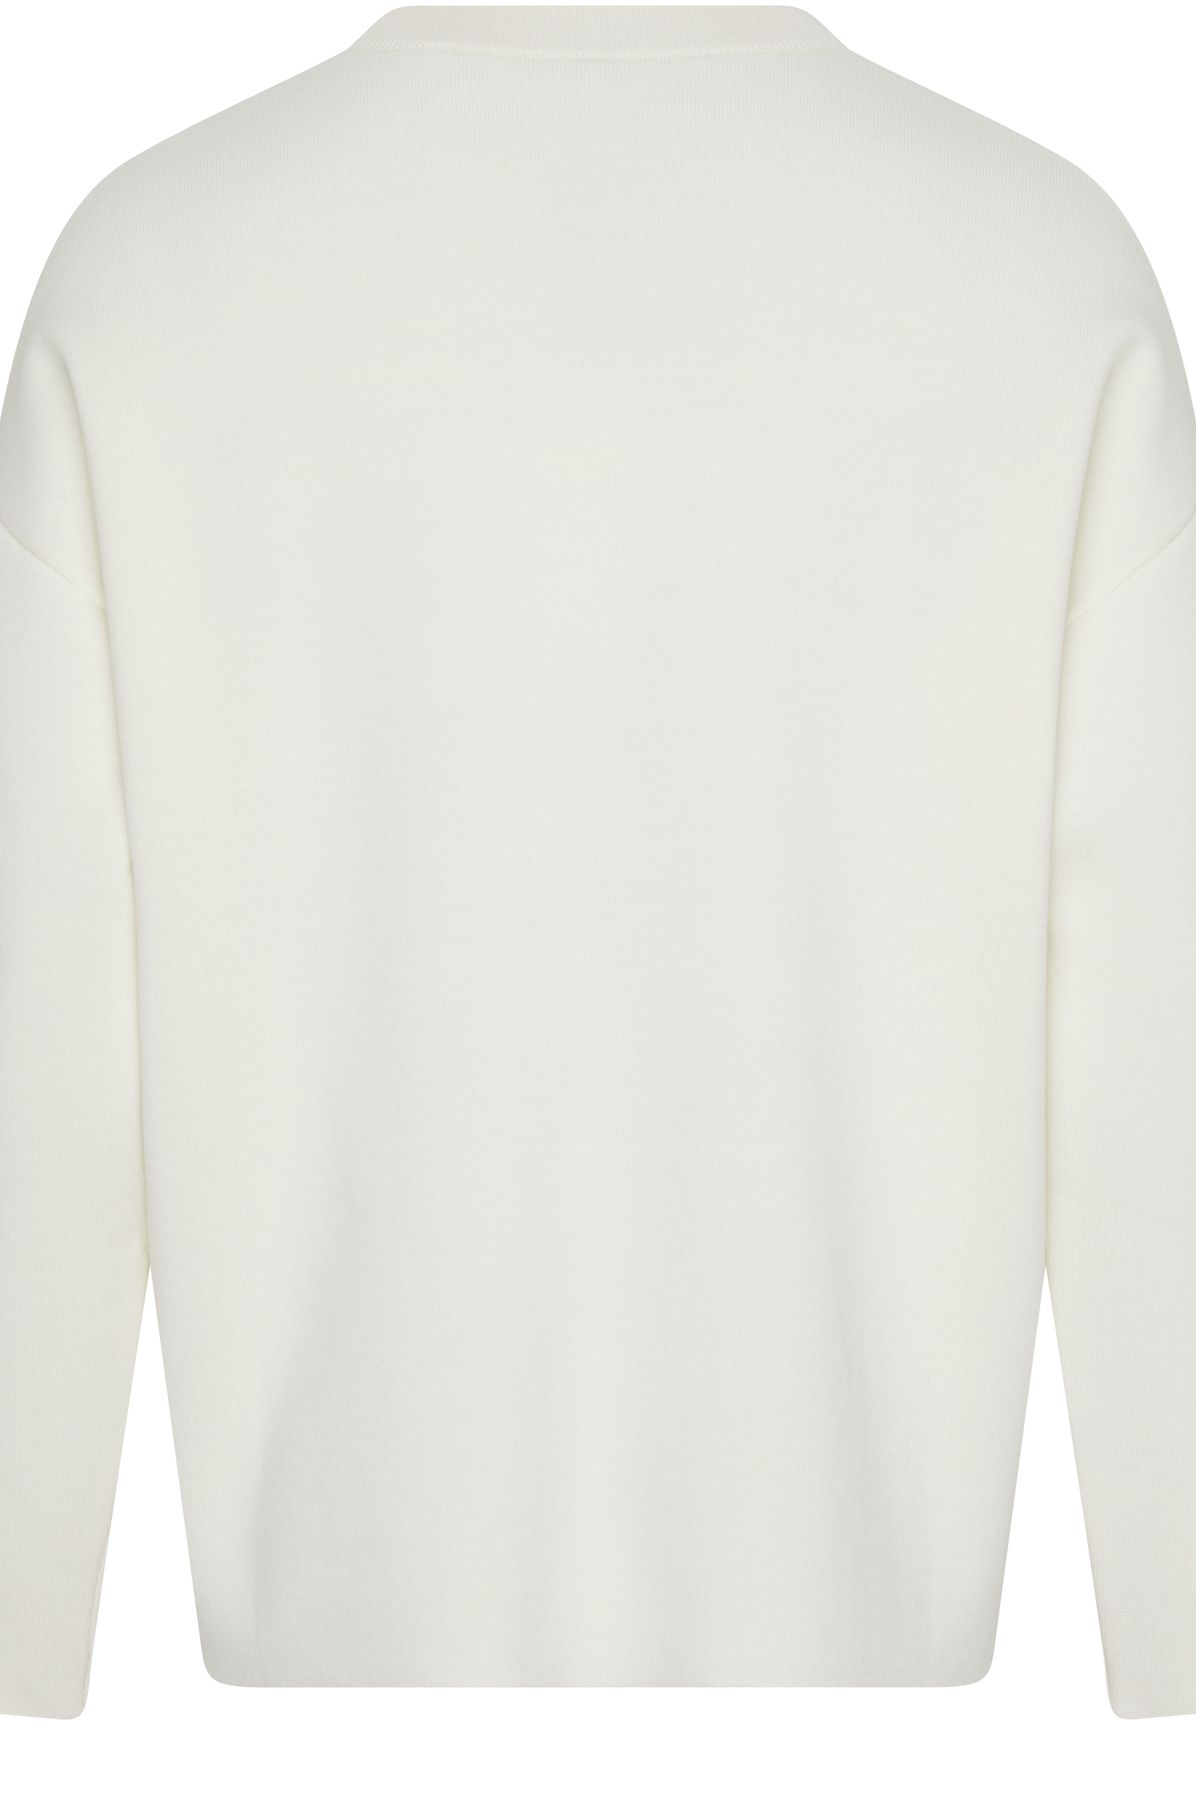 Loewe Sweatshirt with debossed Anagram logo